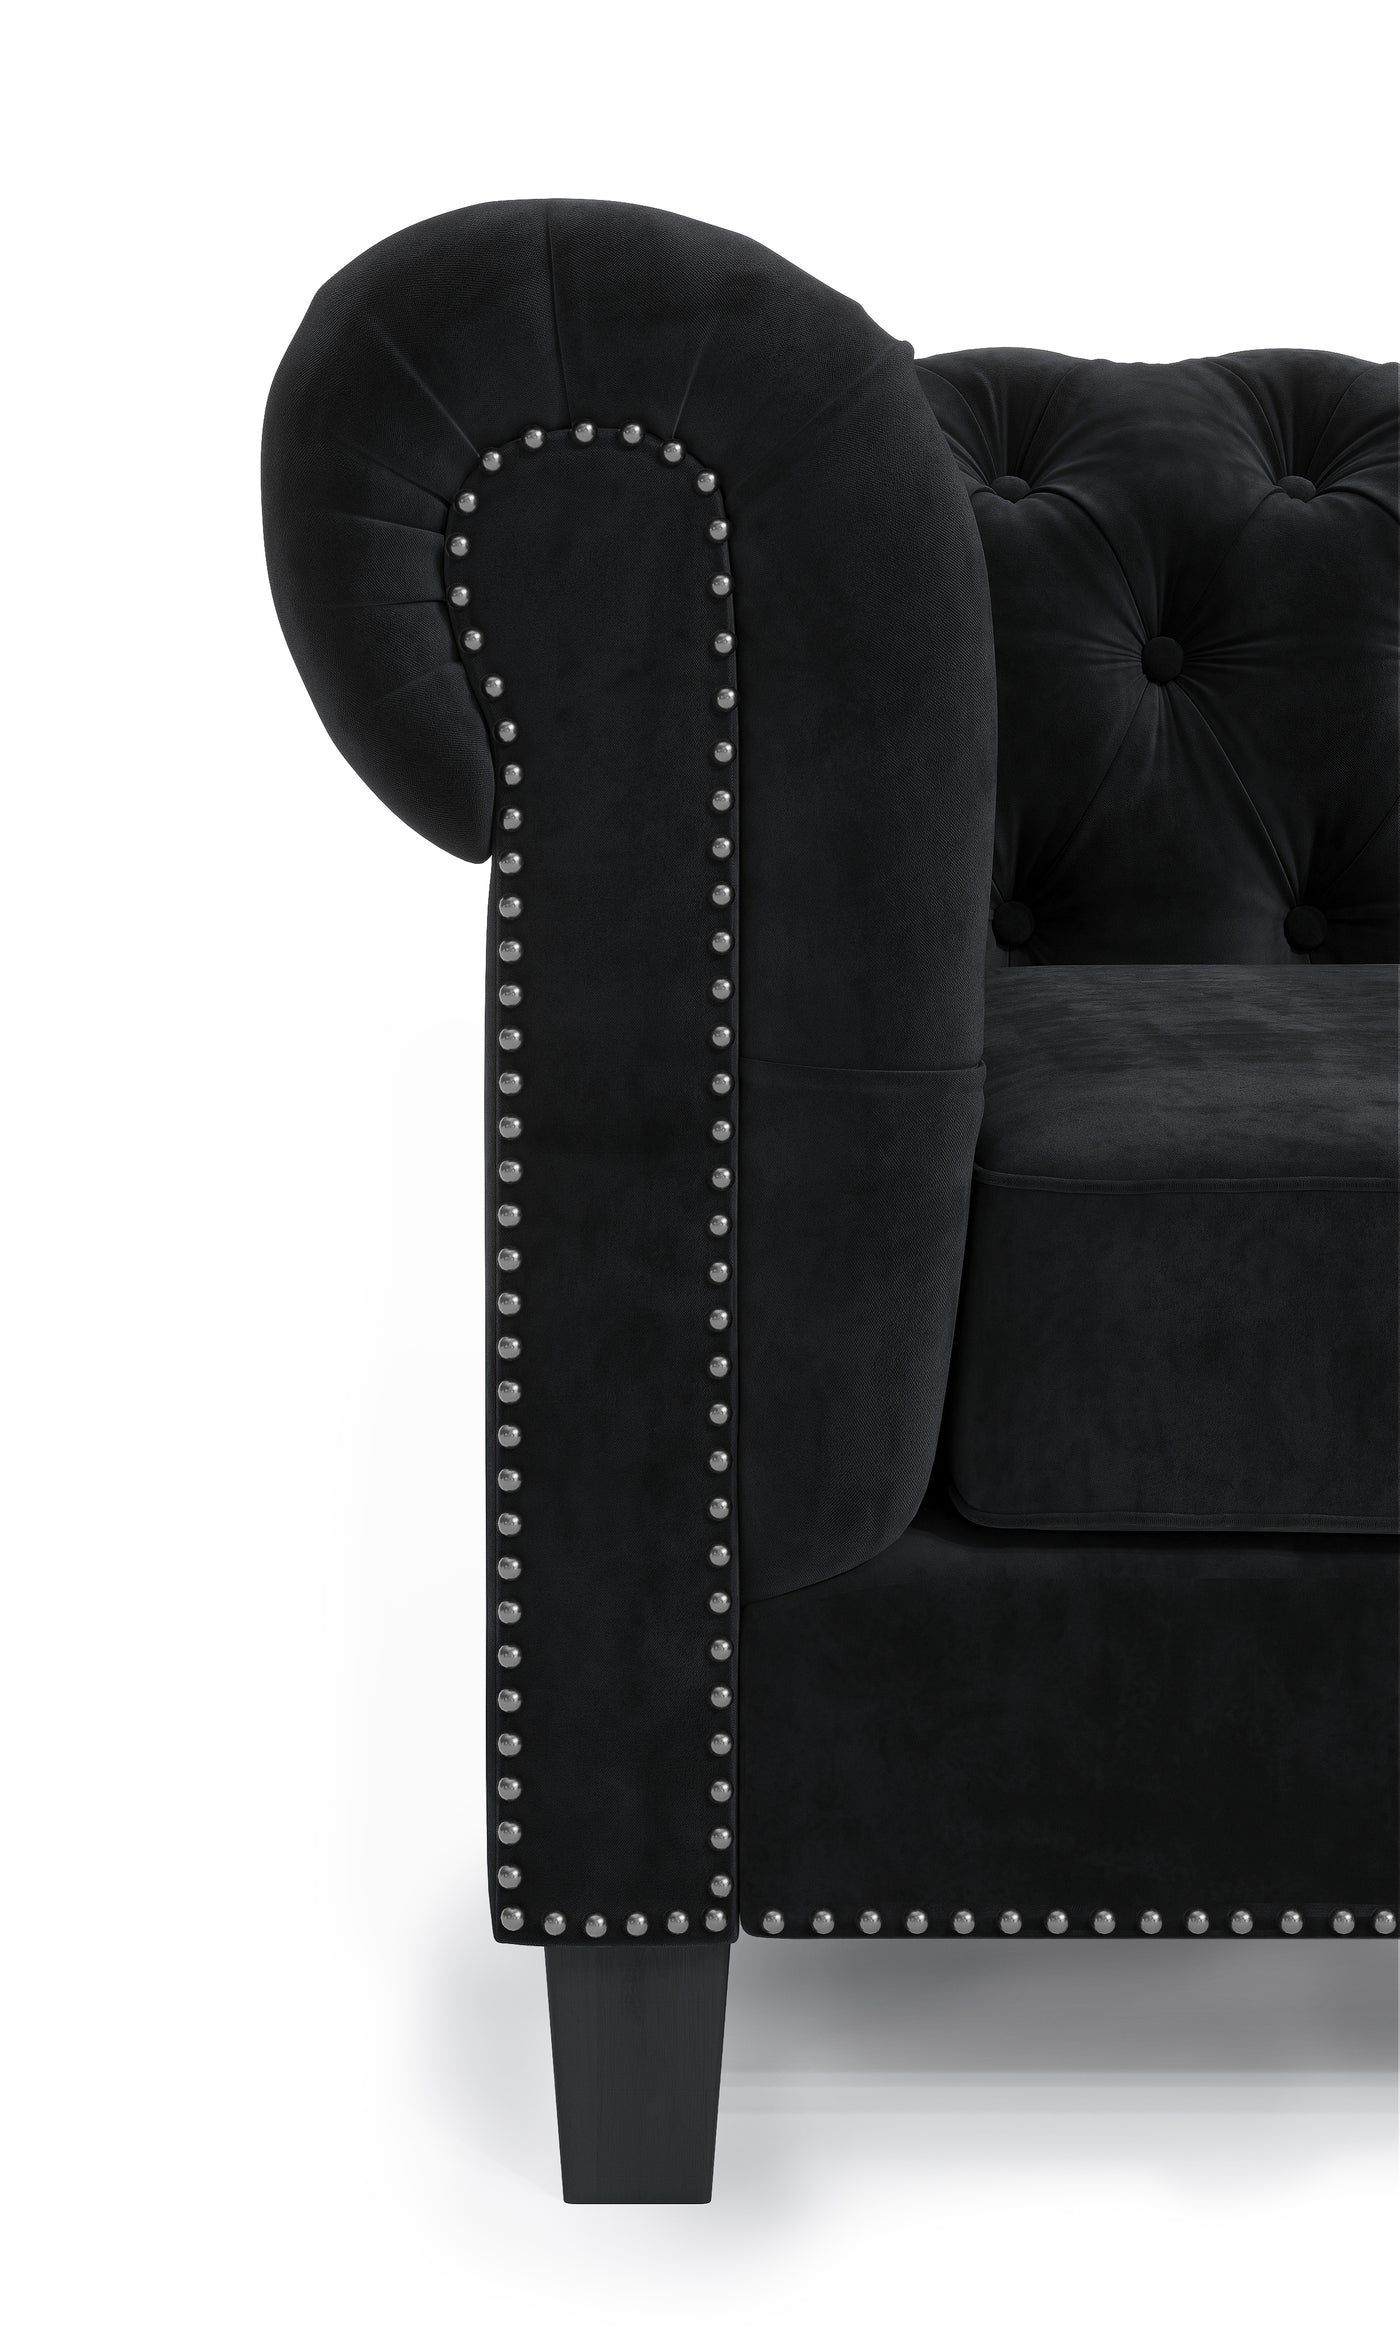 Paris 7 Seater Chesterfield Corner Sofa (Black Velvet) (7807587909886)